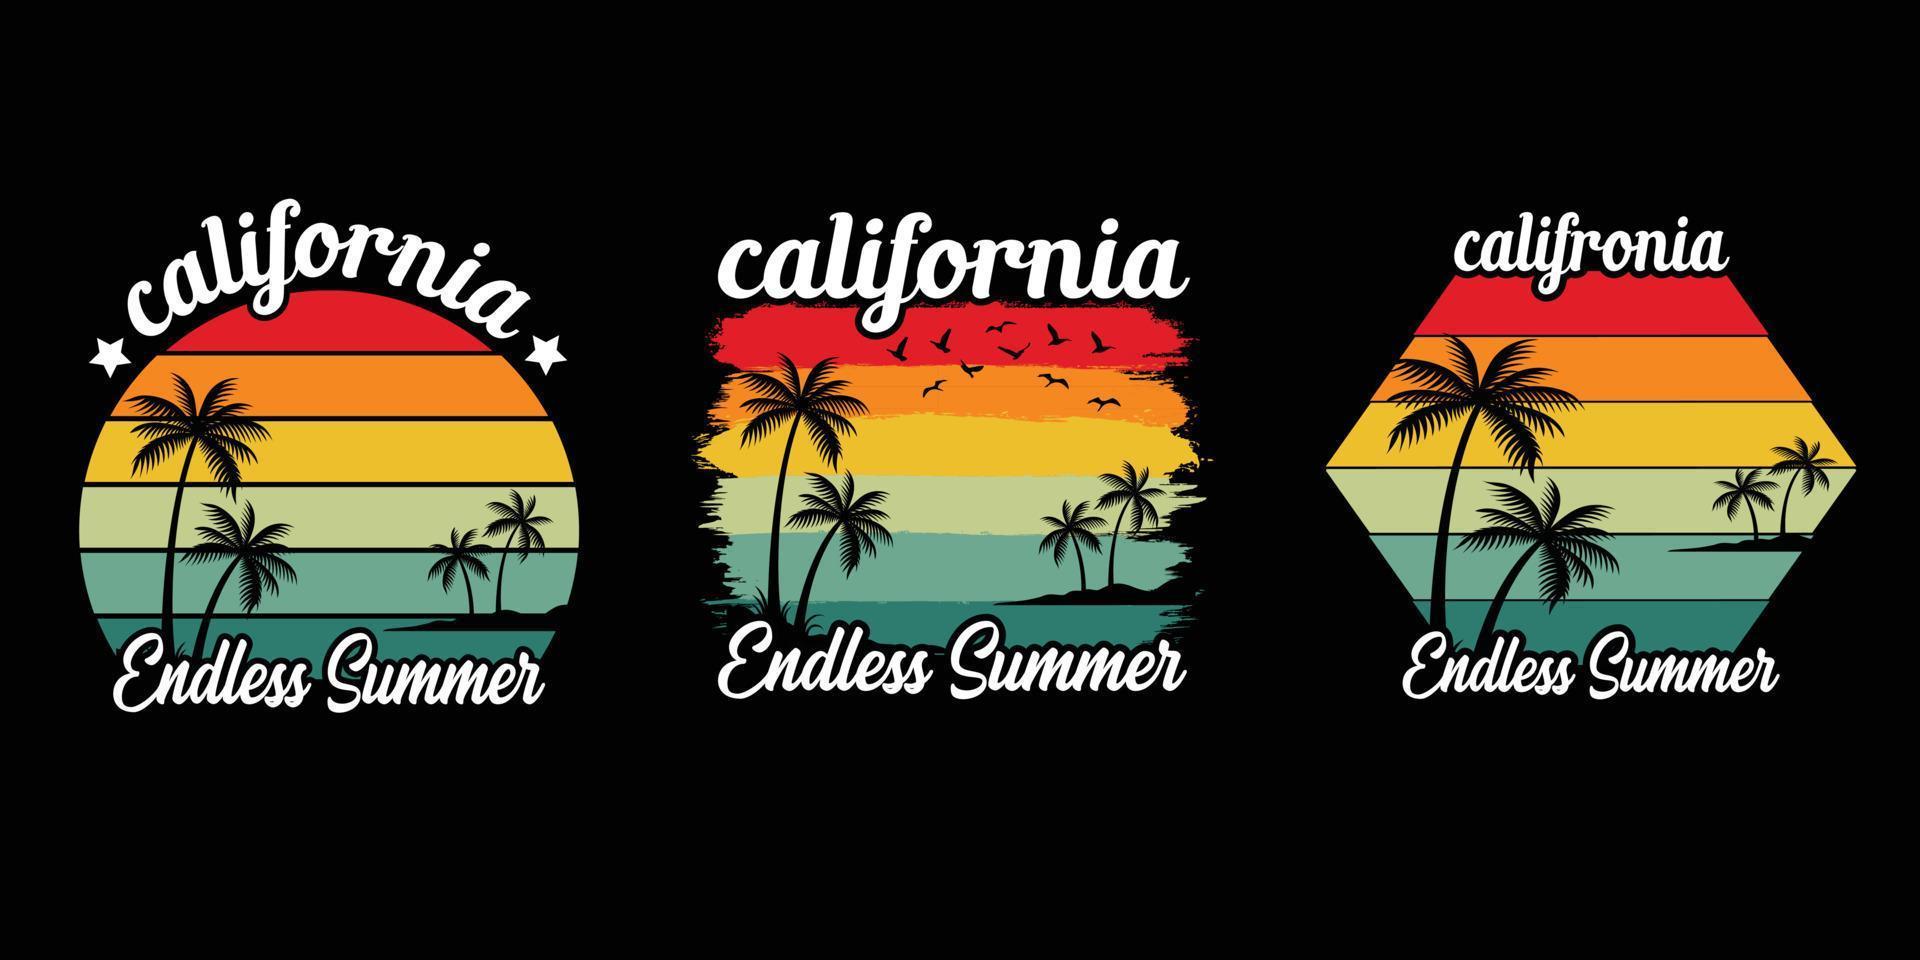 Jahrgang retro Sonnenuntergang Sommer- Strand T-Shirt Design zum Sommer- Stimmung nur, Kalifornien Strand genießen Sommer- mit Palme Bäume Liegestuhl Regenschirm T-Shirt Grafik Banner, Poster, Flyer Vektor Illustration